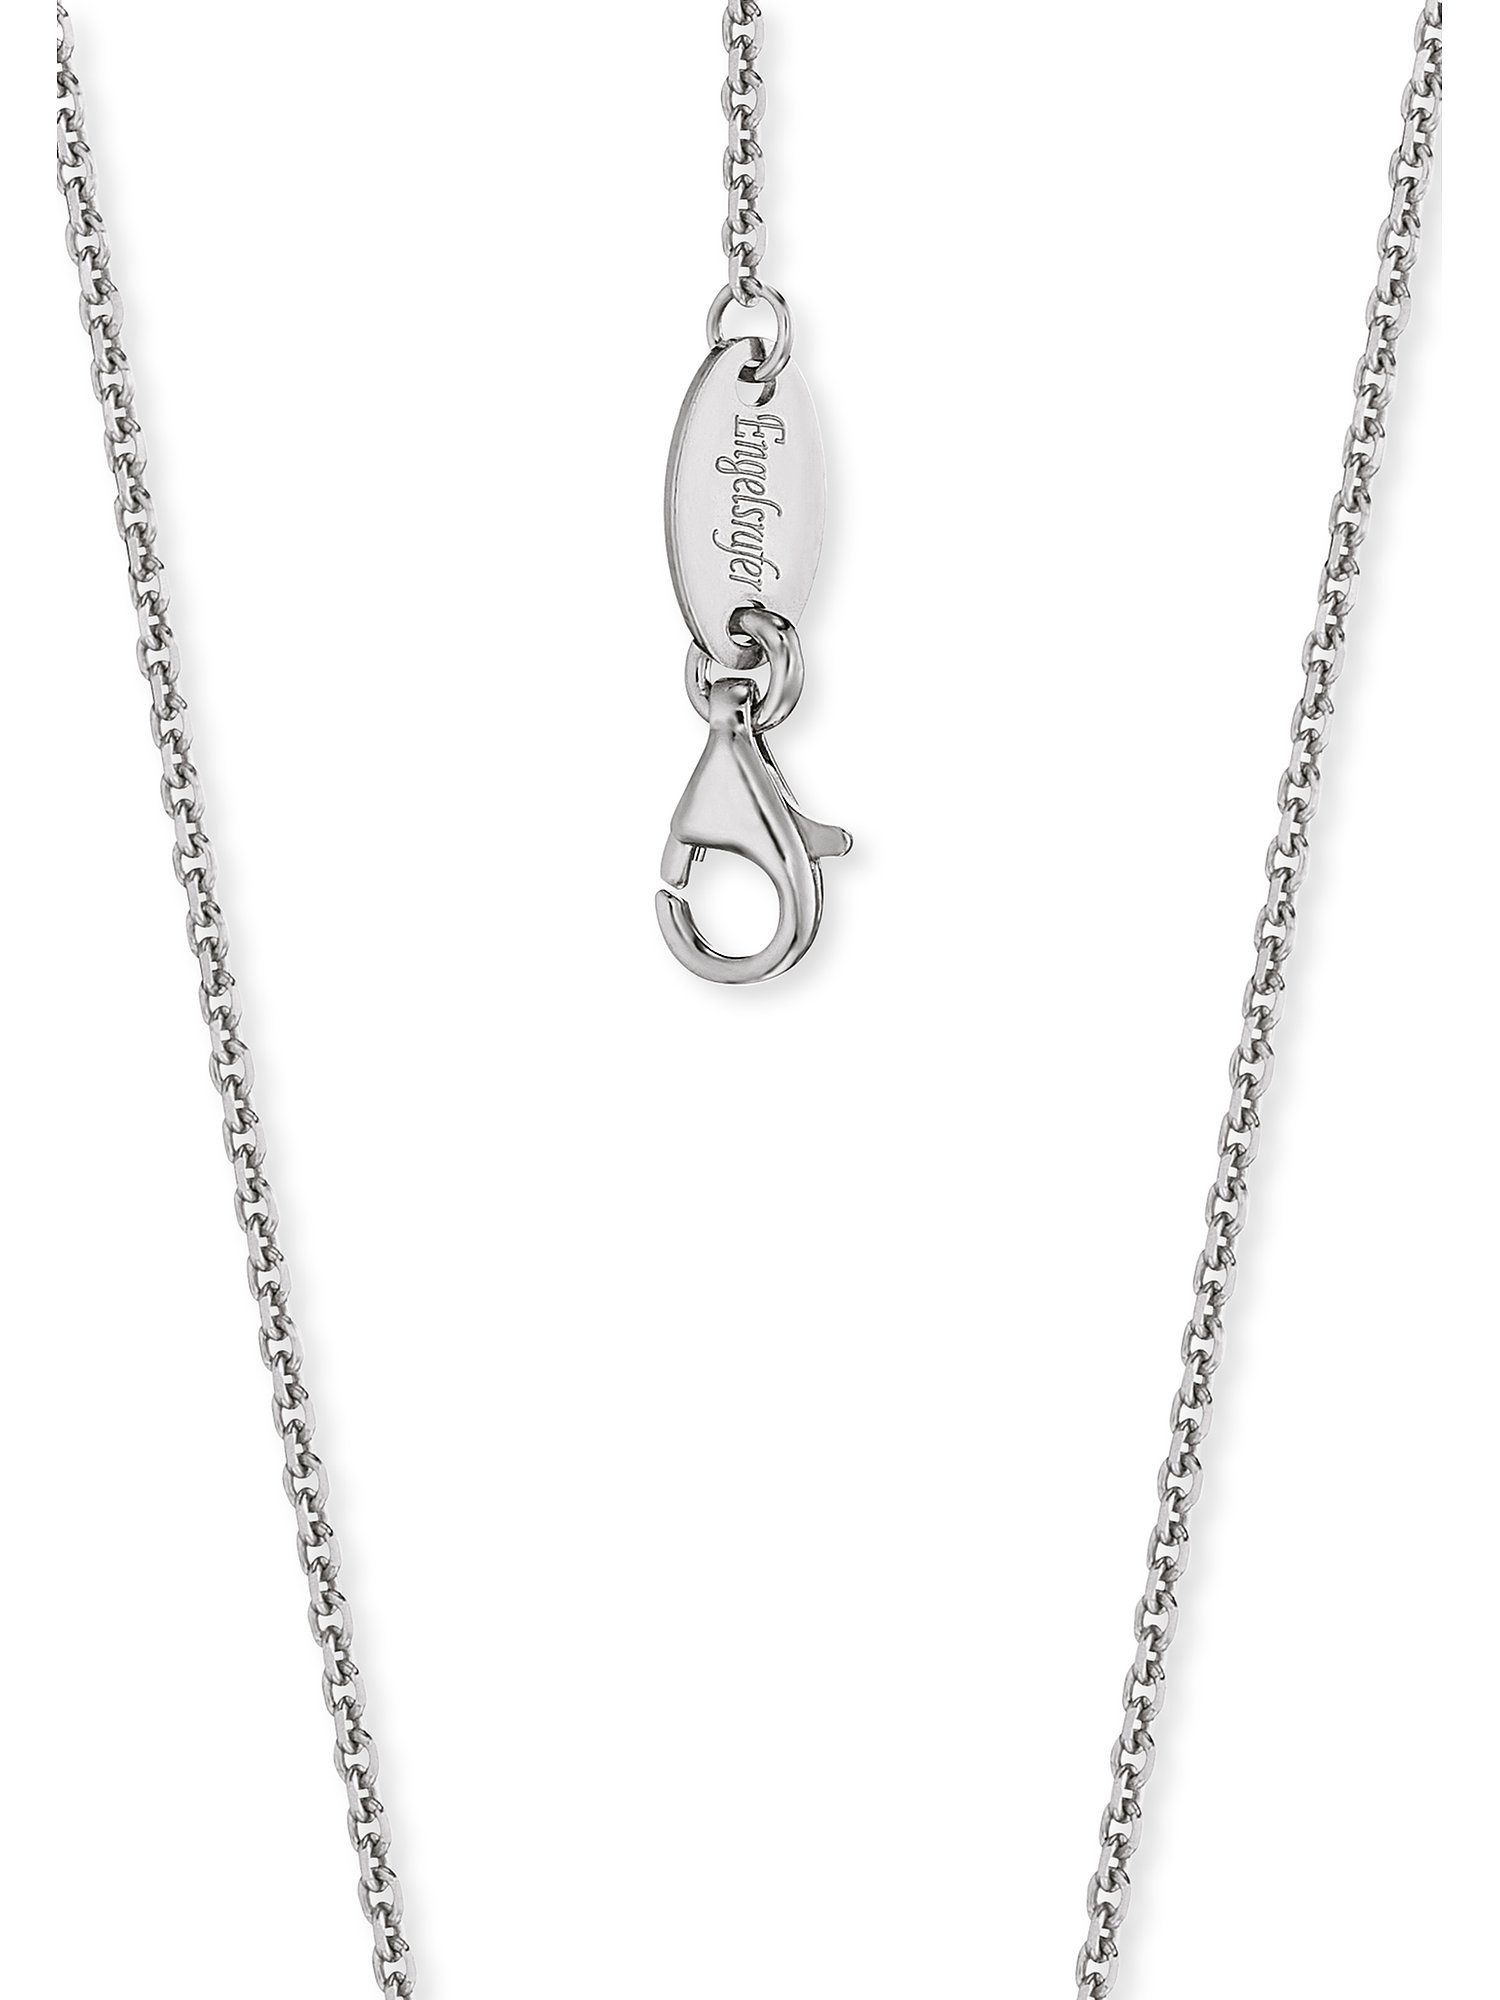 mm 0,15 Stärke: rhodiniert, Damen-Kette Engelsrufer Engelsrufer Silberkette 925er Länge: Breite: 43 cm, 1,5 cm, Silber